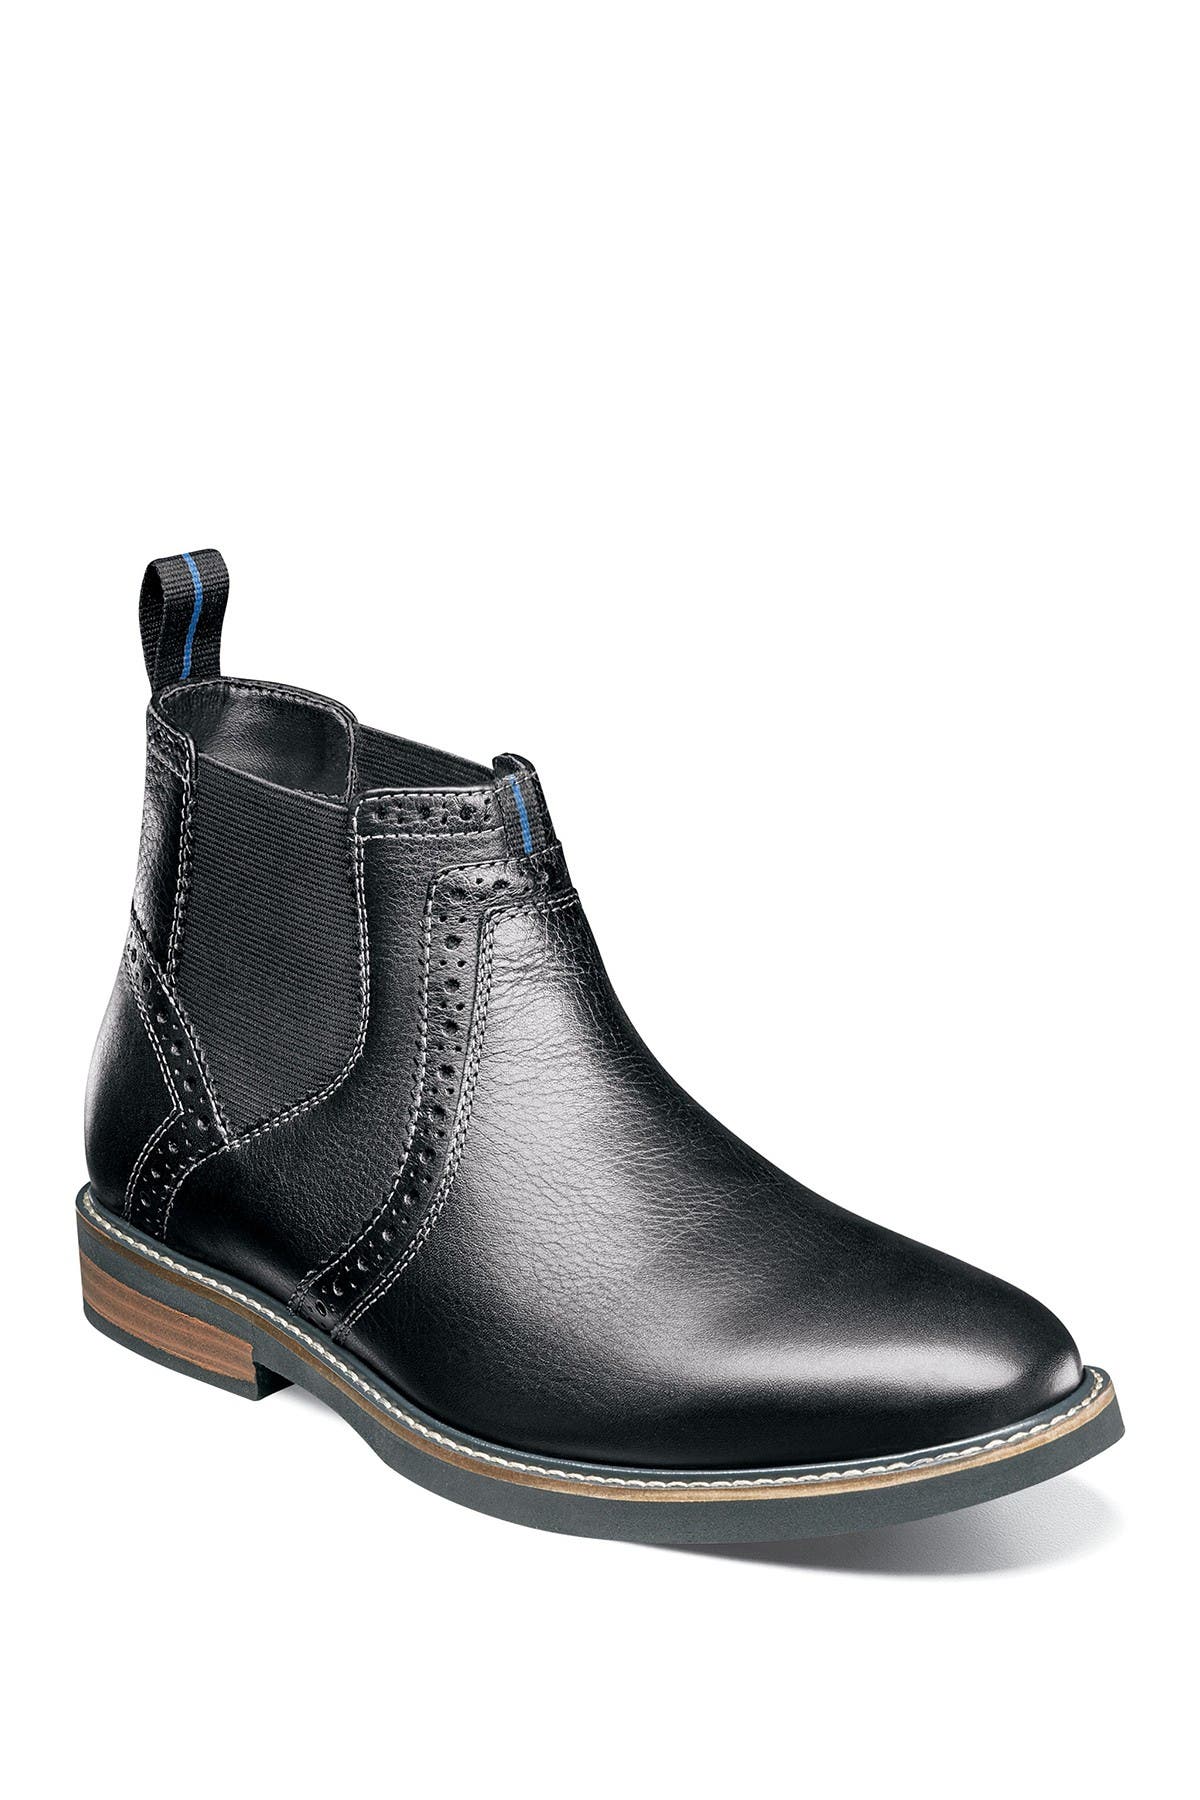 plain black chelsea boots